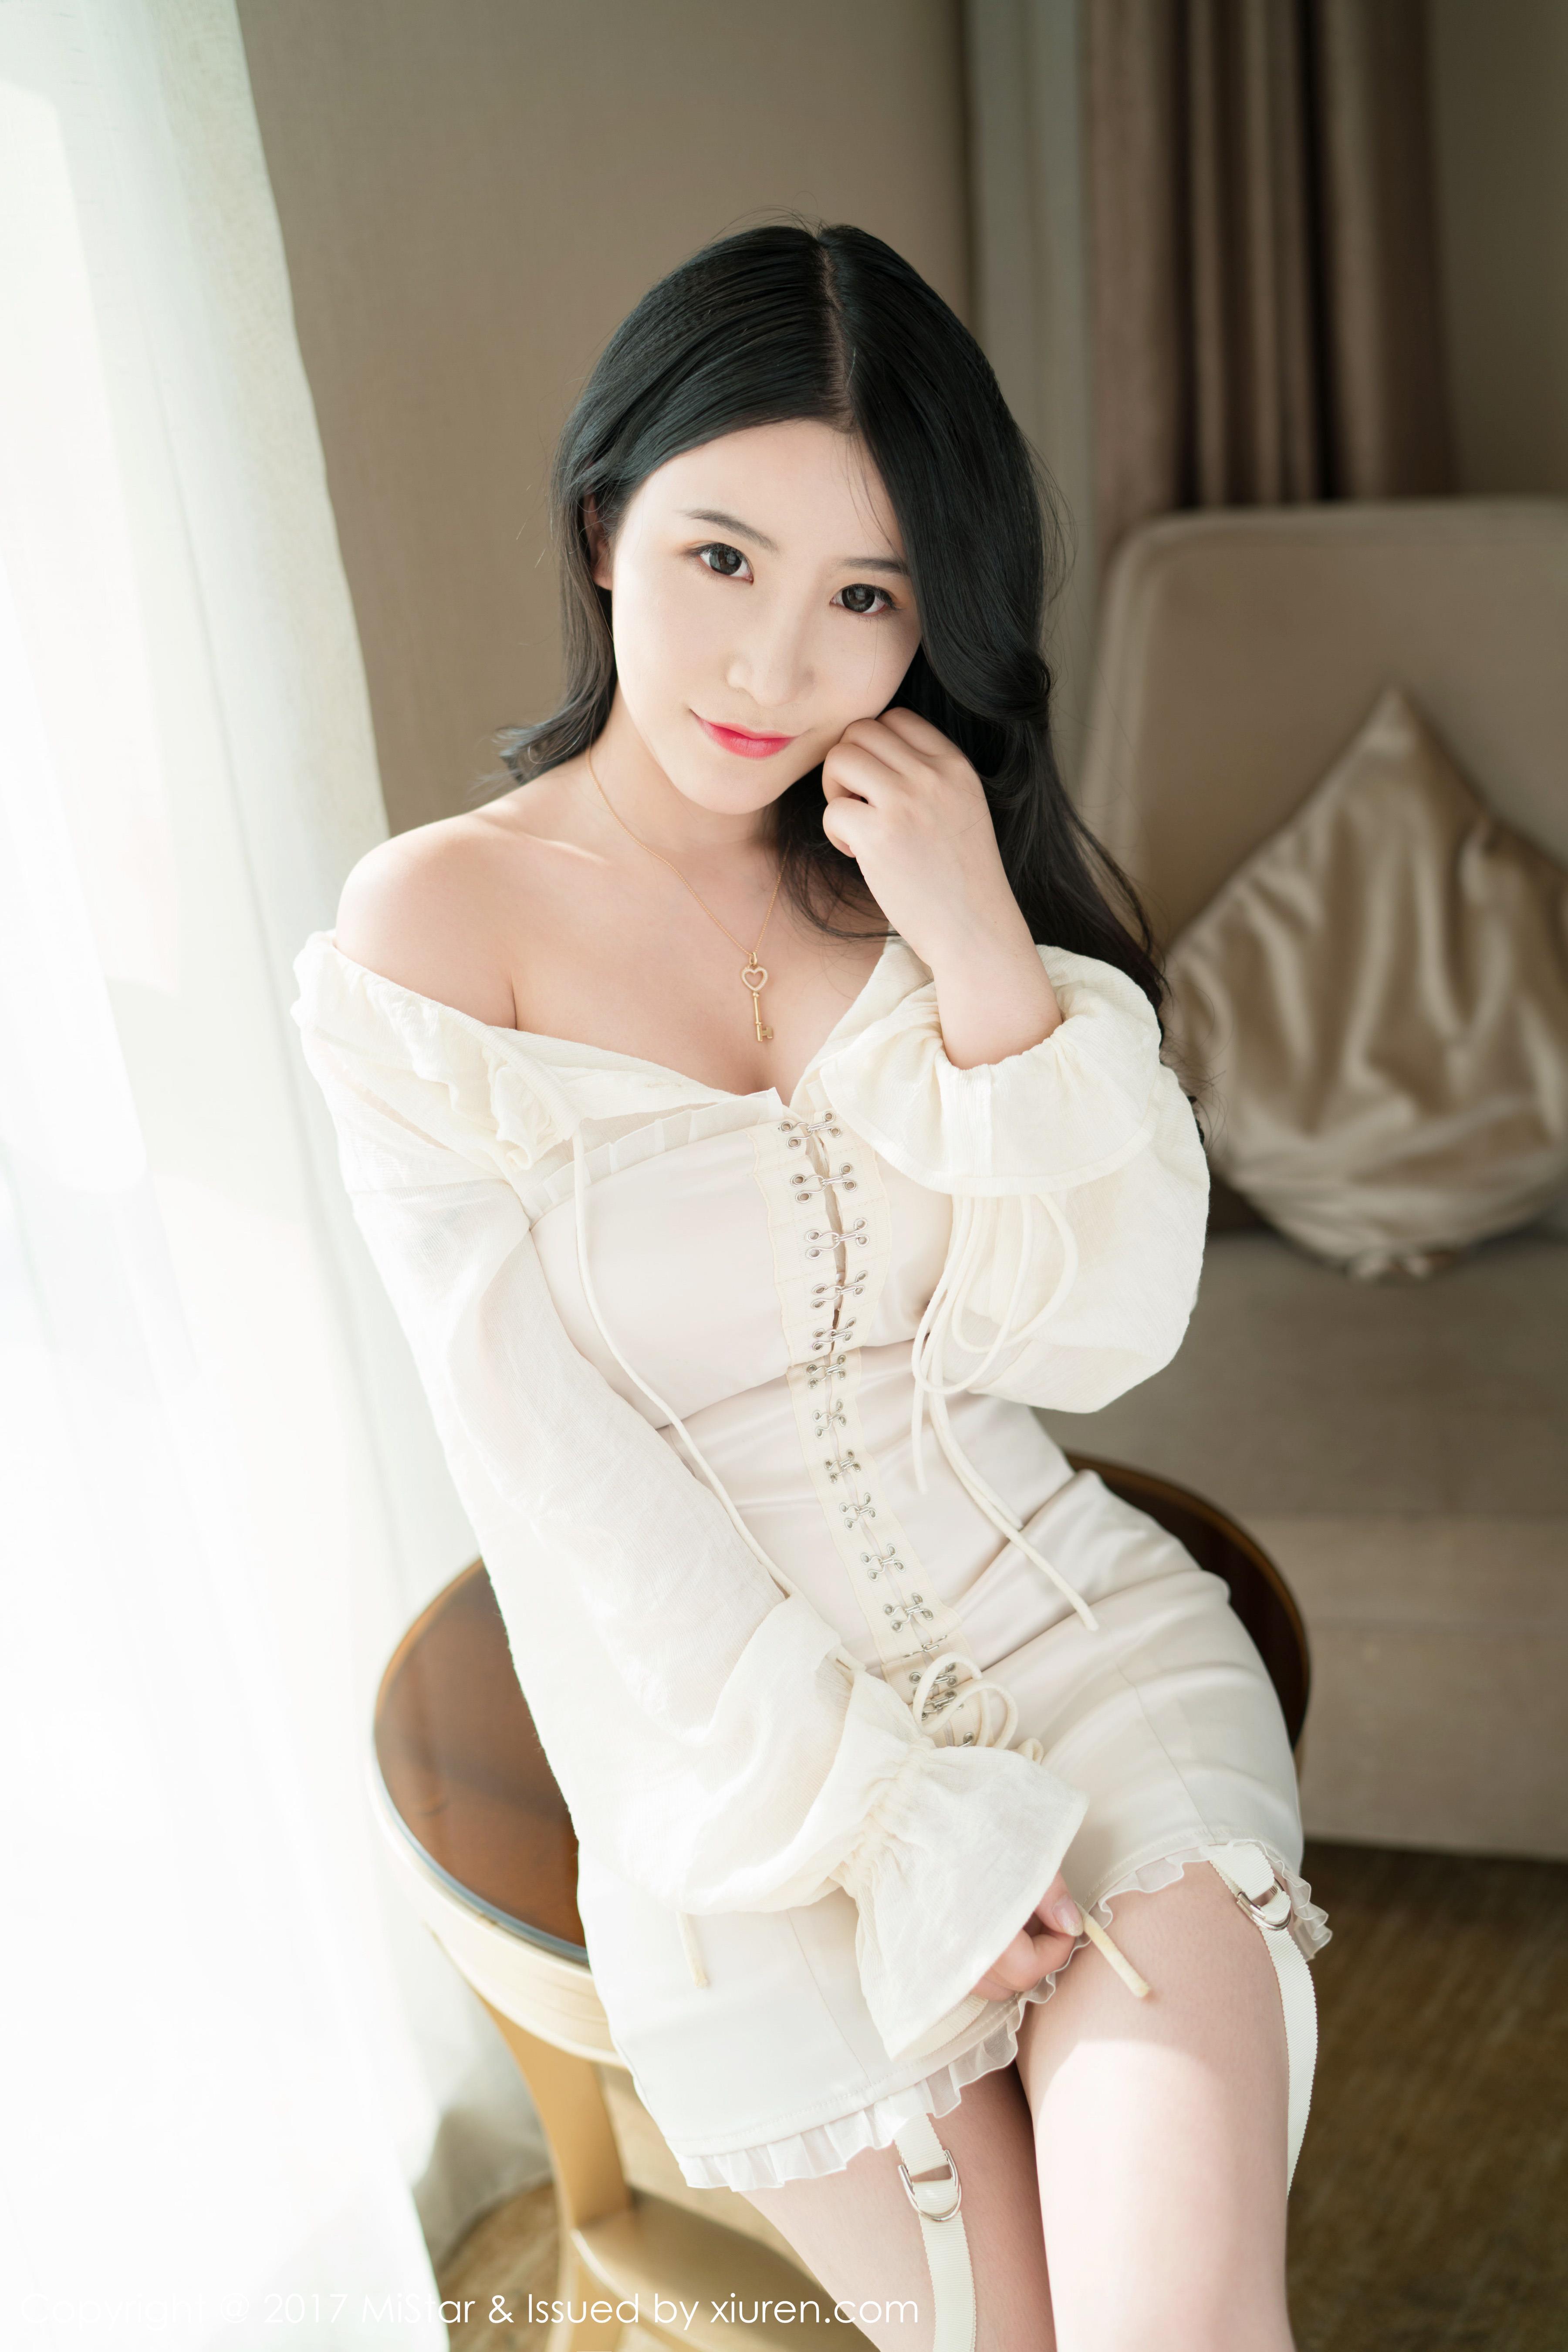 [MiStar魅妍社]MS20171218VOL0203 谢芷馨Sindy 白色塑身连衣裙与粉色性感蕾丝内衣私房写真集,